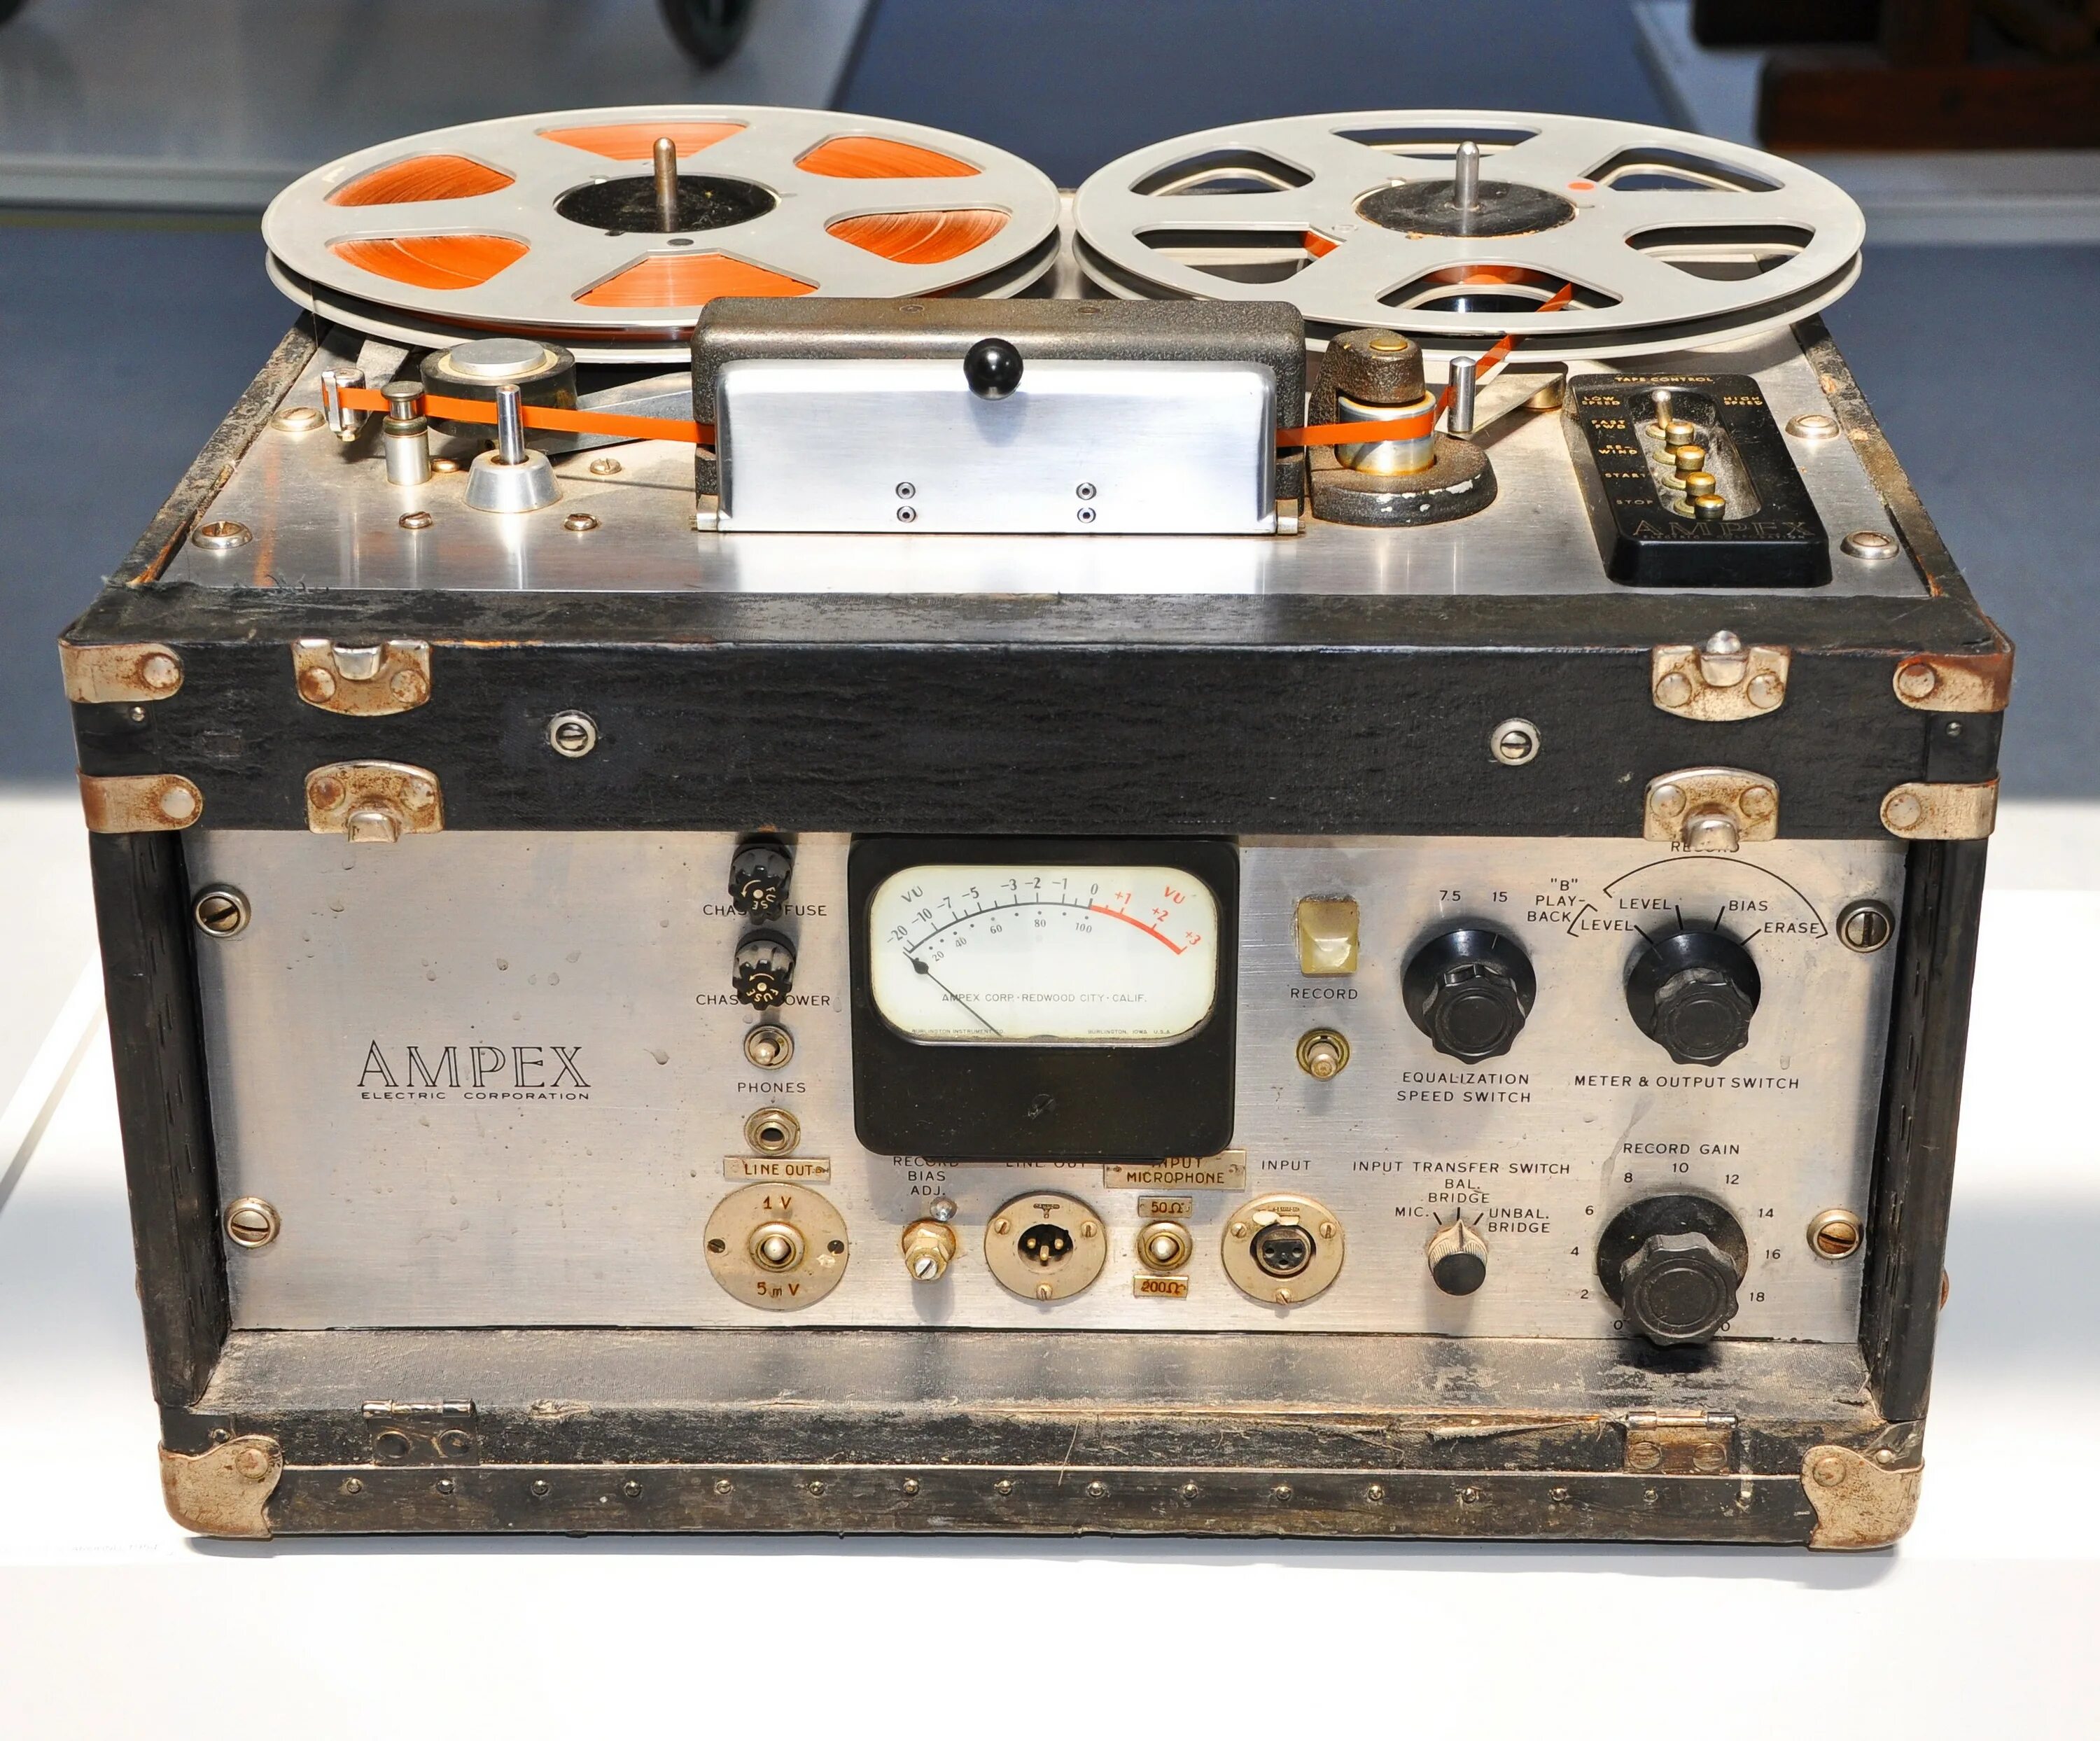 Магнитофон Ампекс. Ampex model 402. Кассеты Ampex. П-600 магнитофон. Золотой магнитофон